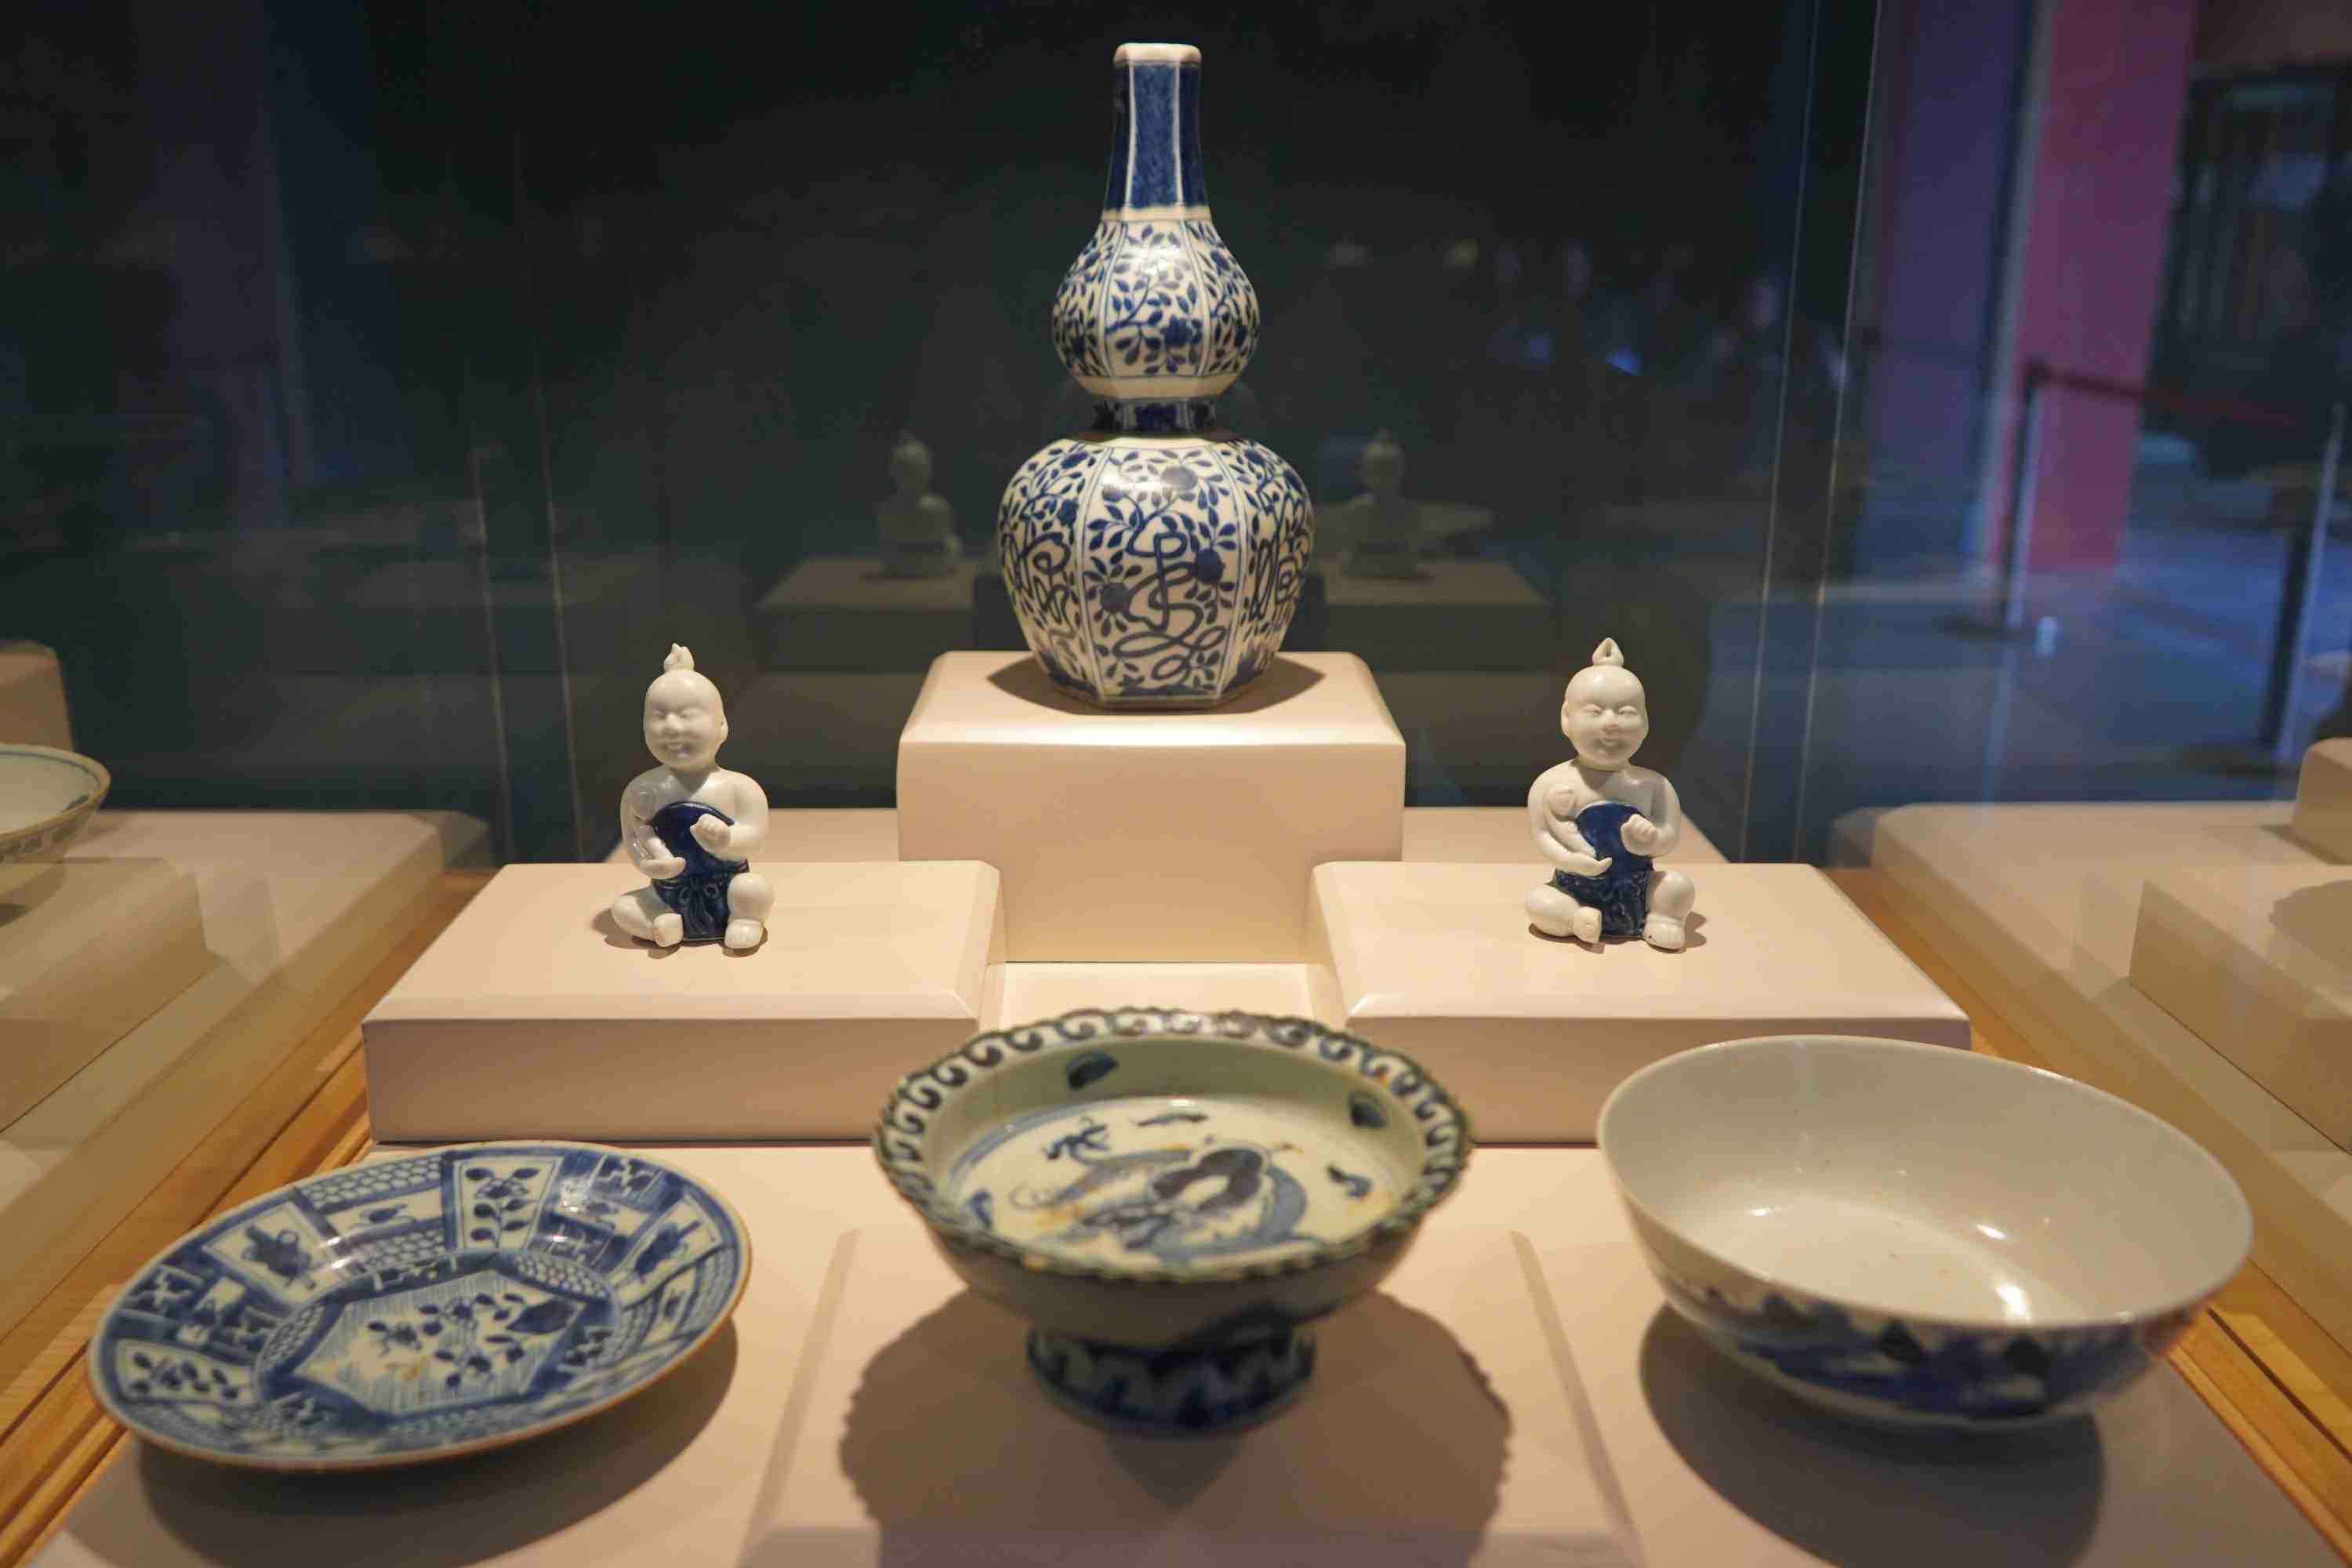 Cùng với 18 bảo vật quốc gia, Bảo tàng Hải Phòng cũng phối hợp Nhà sưu tập An Biên trưng bày hơn 300 cổ vật quý hiếm qua các thời kỳ. 